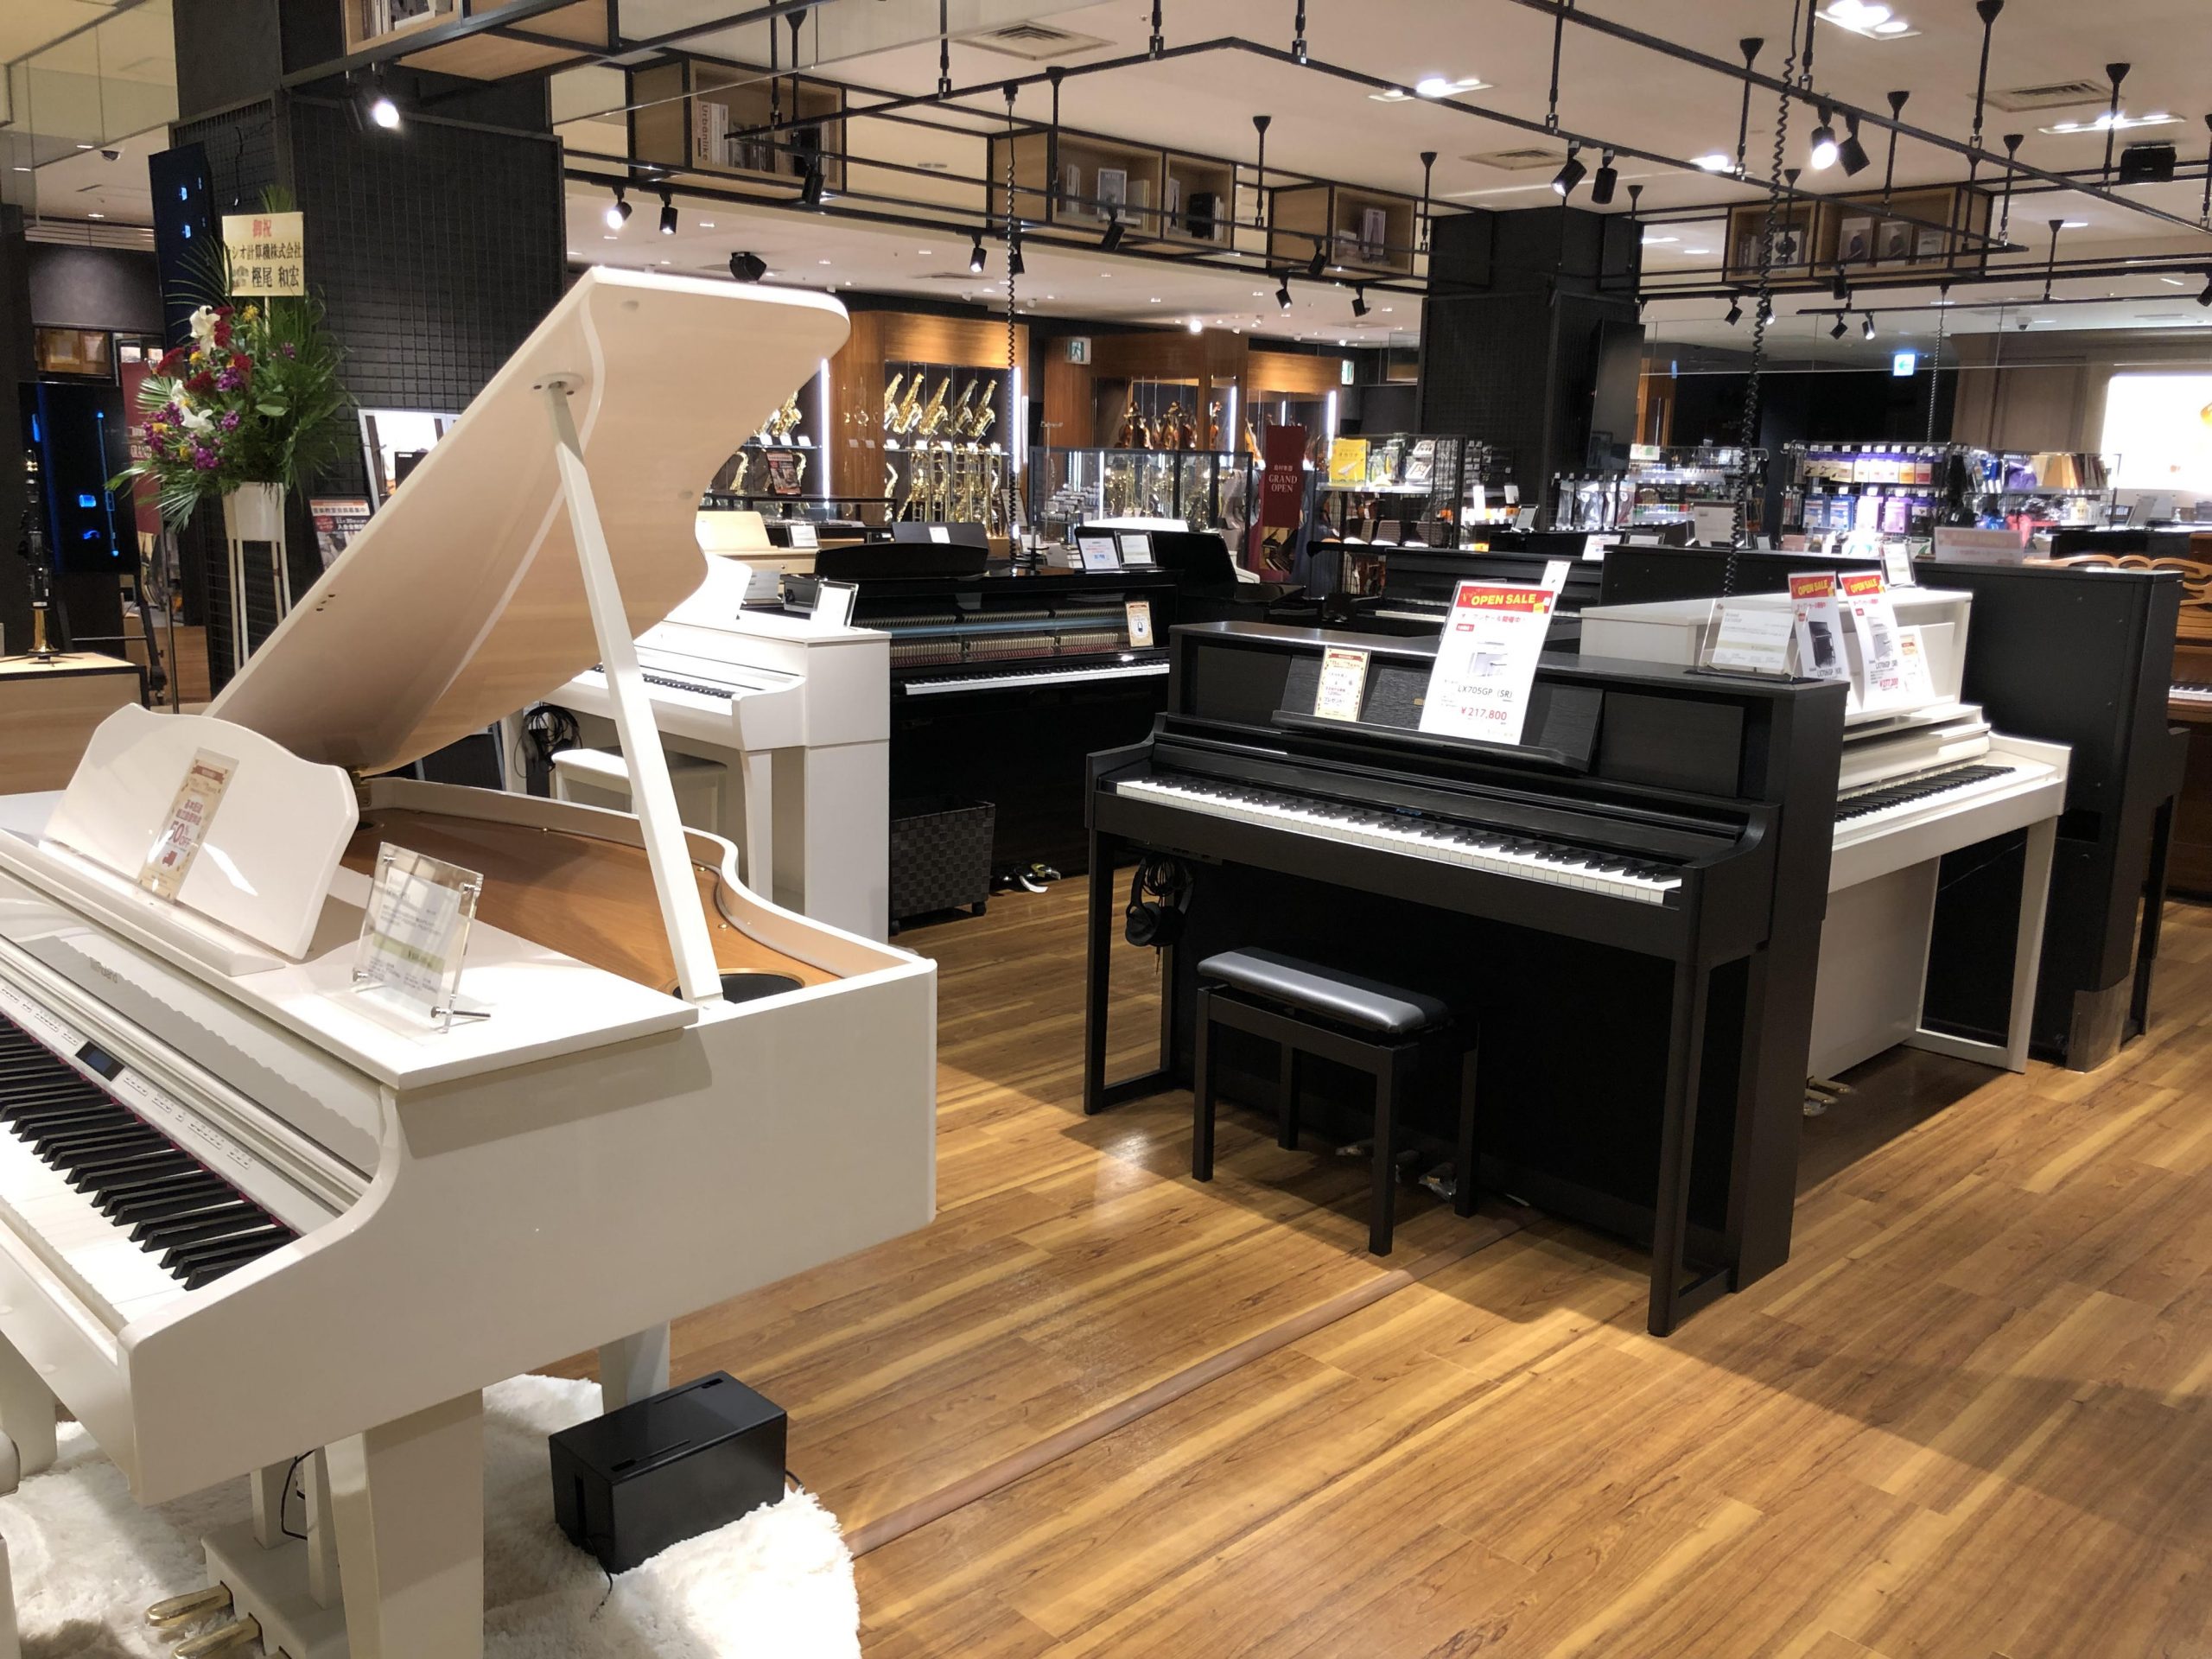 *人気のメーカーのピアノを一度にご覧頂けます！ 当店では[!!YAMAHA、KAWAI、Roland、CASIO!!]の4メーカーの電子ピアノを常時取り揃えております。レッスンの練習用におすすめのピアノからデザイン性・インテリア性の高いピアノまで幅広くご覧頂けます。クラシック専門店としてグランドピア […]